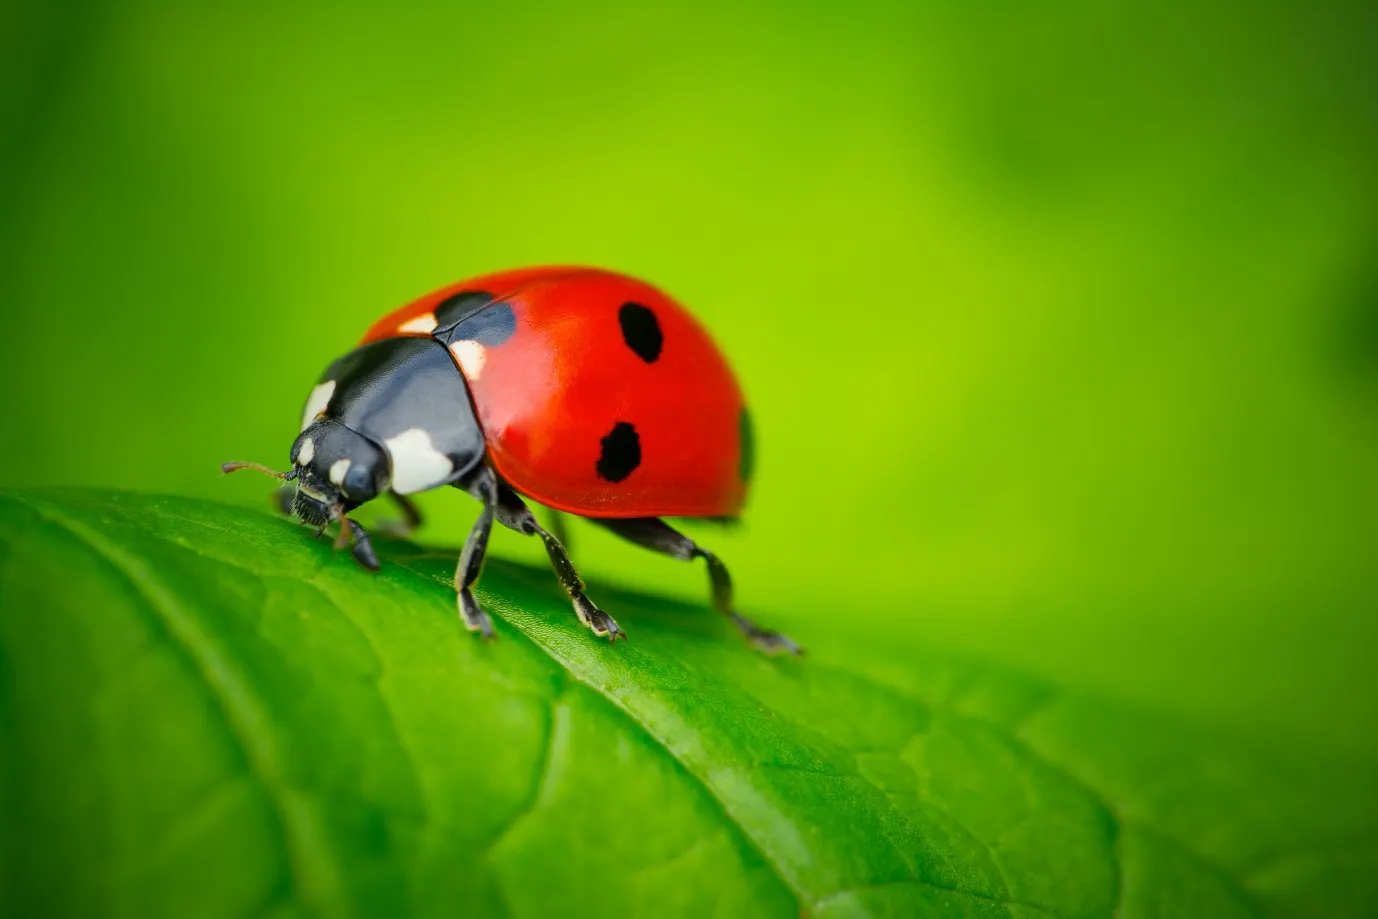 Closeup shot of a ladybug